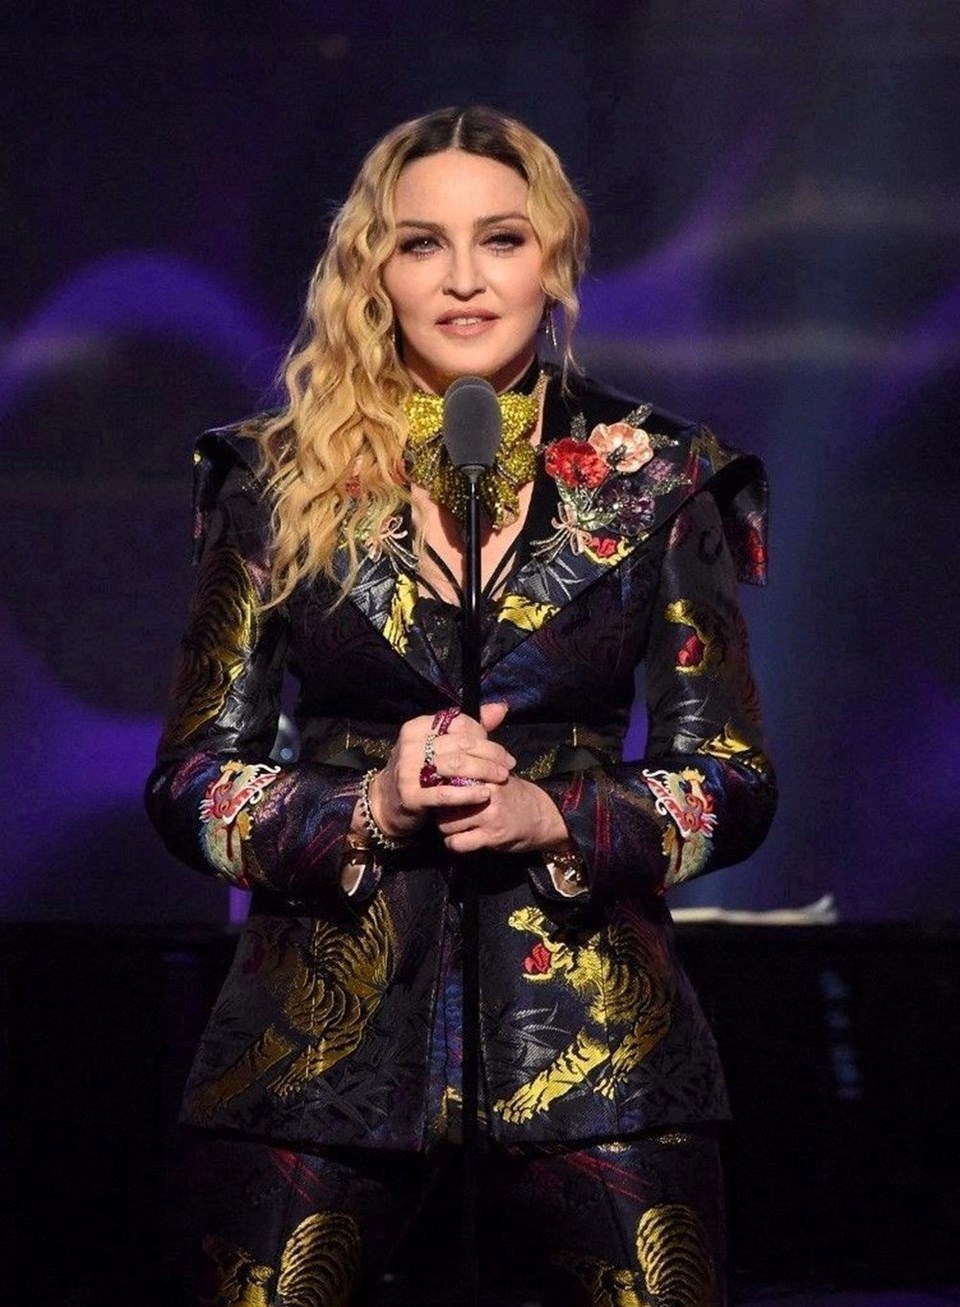 Hastaneye kaldırılan Madonna'nın sınırlarını zorladığı ortaya çıktı: En iyisi olmak istiyordu - 1